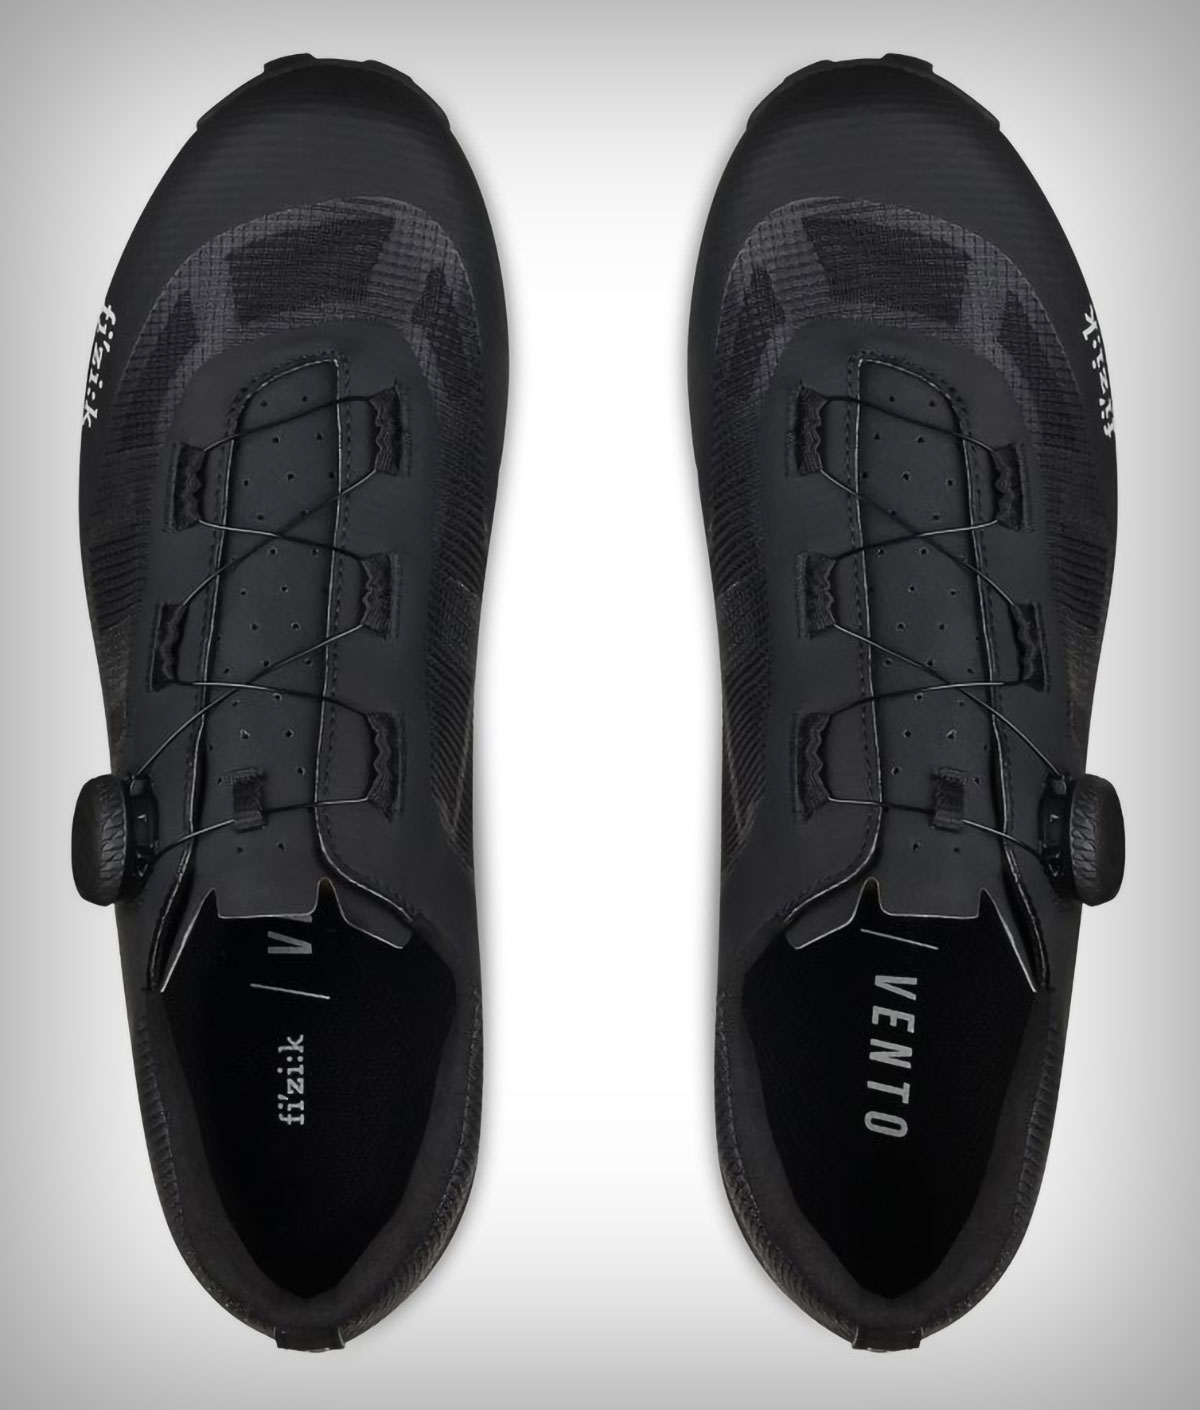 Fizik Vento Proxy, las nuevas zapatillas de la marca específicas para XC, Ciclocross y Gravel